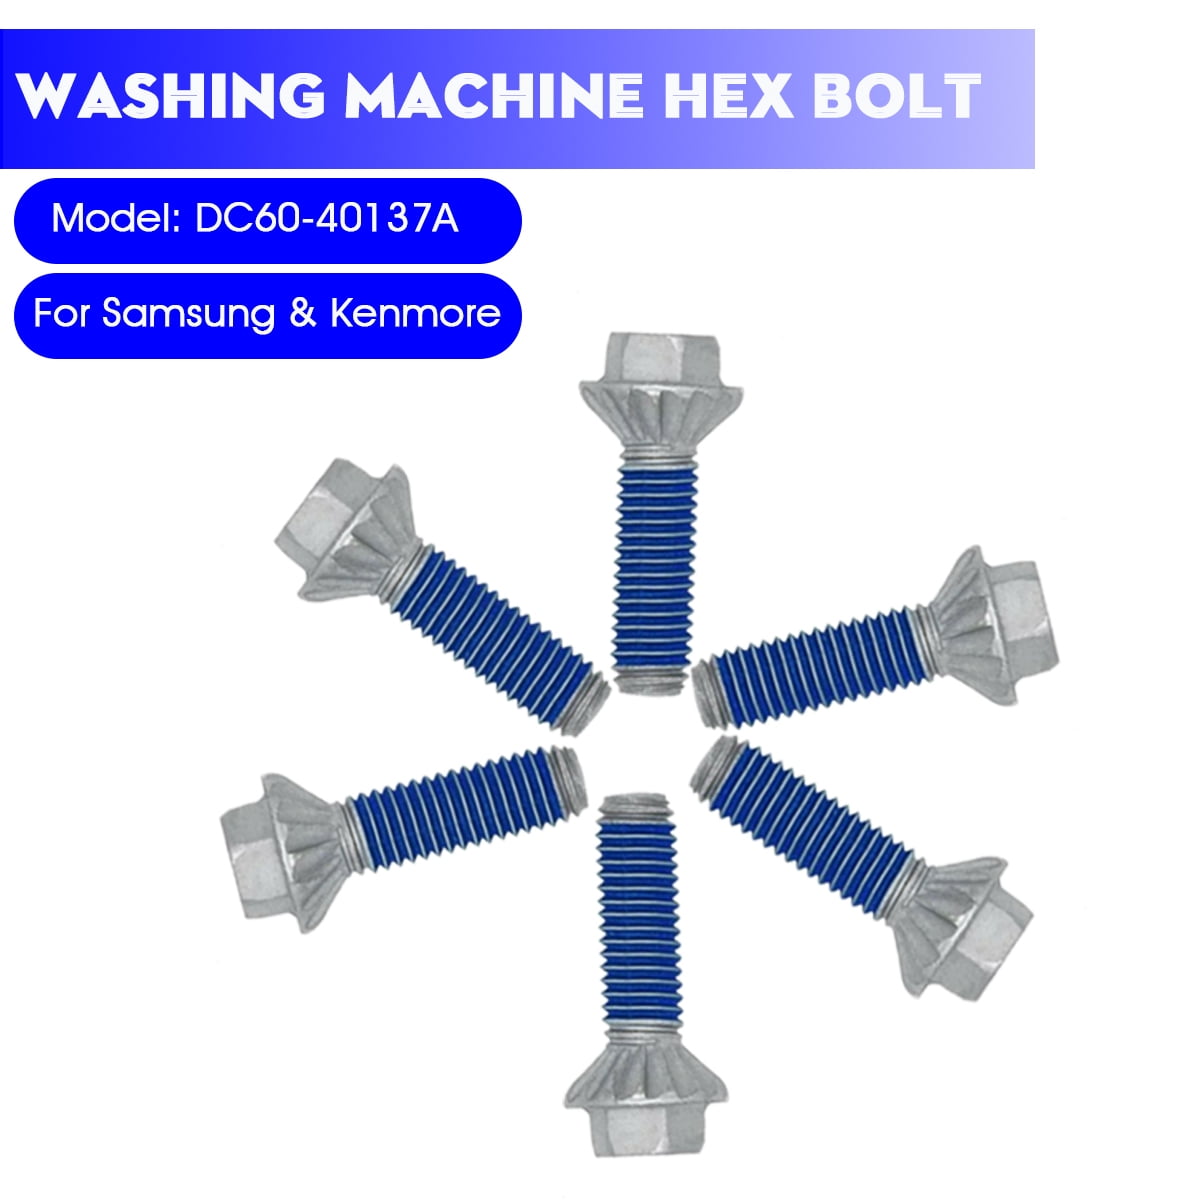 GENUINE SAMSUNG WASHING MACHINE BOLT HEX DC60-40137A 